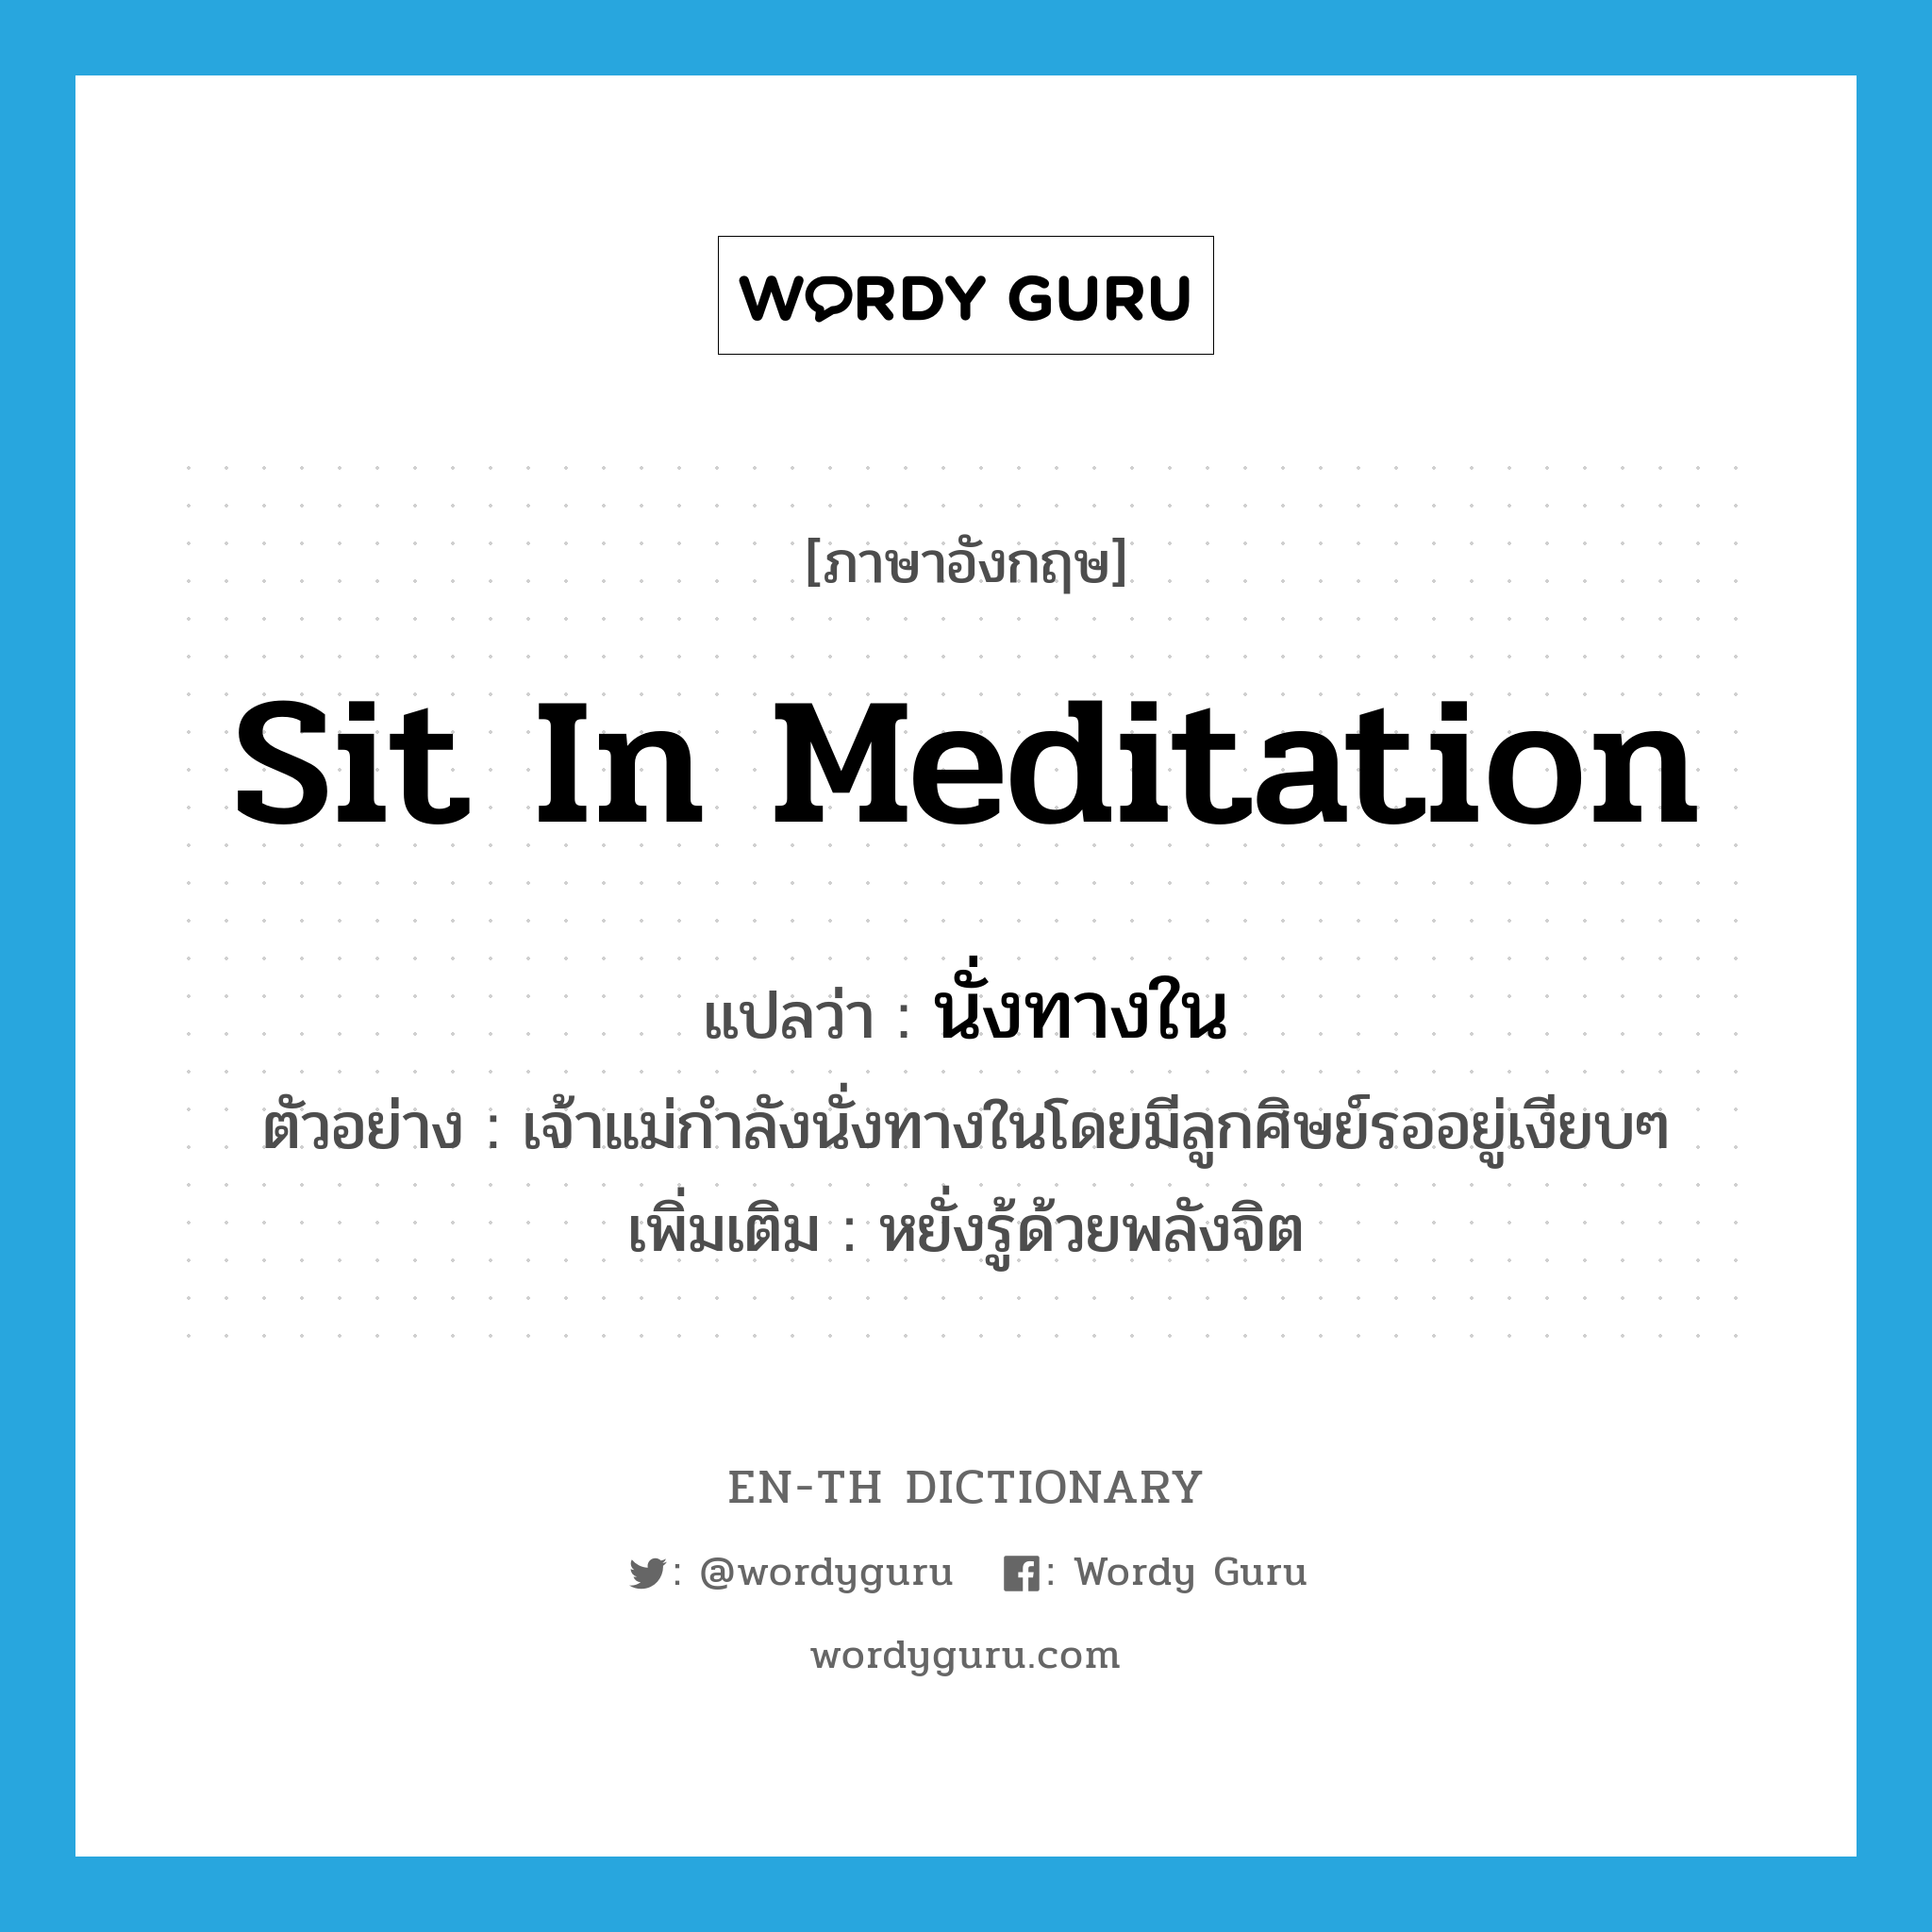 นั่งทางใน ภาษาอังกฤษ?, คำศัพท์ภาษาอังกฤษ นั่งทางใน แปลว่า sit in meditation ประเภท V ตัวอย่าง เจ้าแม่กำลังนั่งทางในโดยมีลูกศิษย์รออยู่เงียบๆ เพิ่มเติม หยั่งรู้ด้วยพลังจิต หมวด V